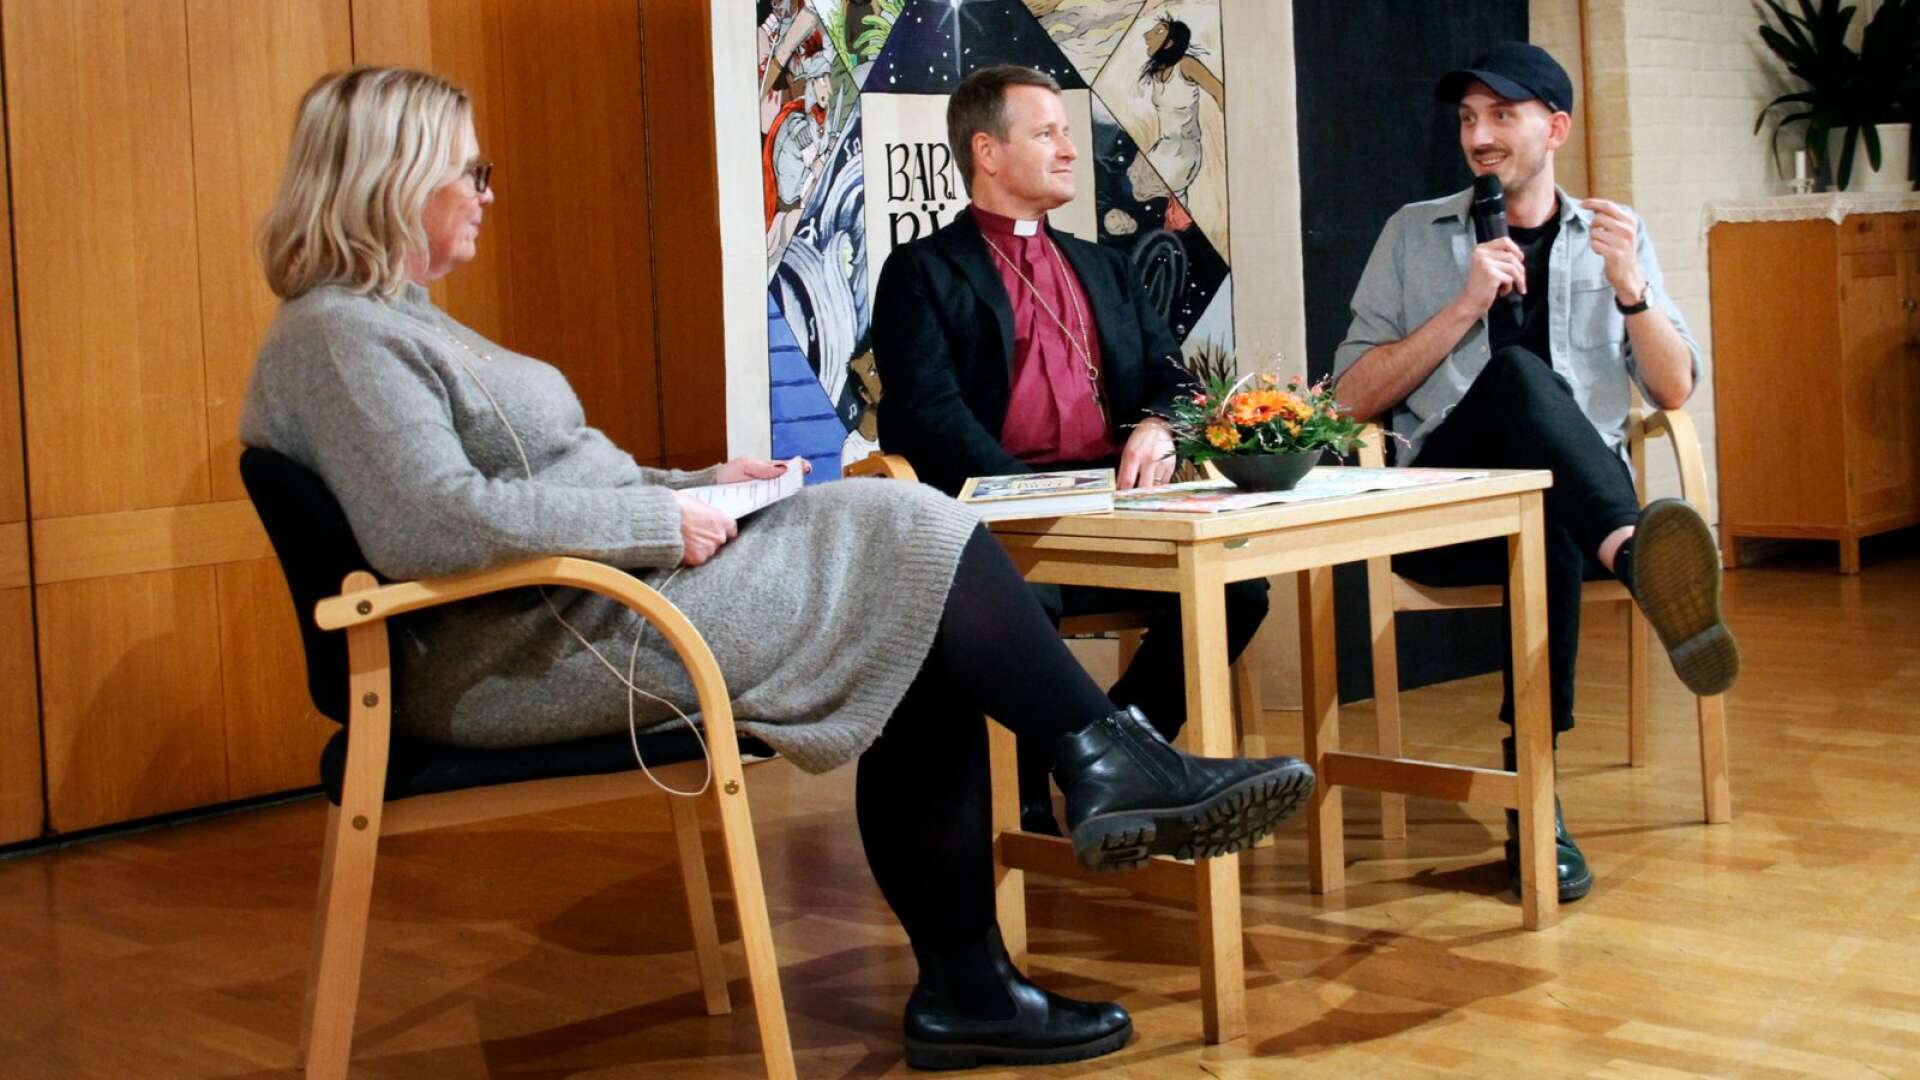 Bibliotekets Carin Wernberger Dahlin ledde samtalet med biskopen Sören Dalevi som tillsammans med illustratören Marcus-Gunnar Pettersson gett ut Barnens bästa bibel.